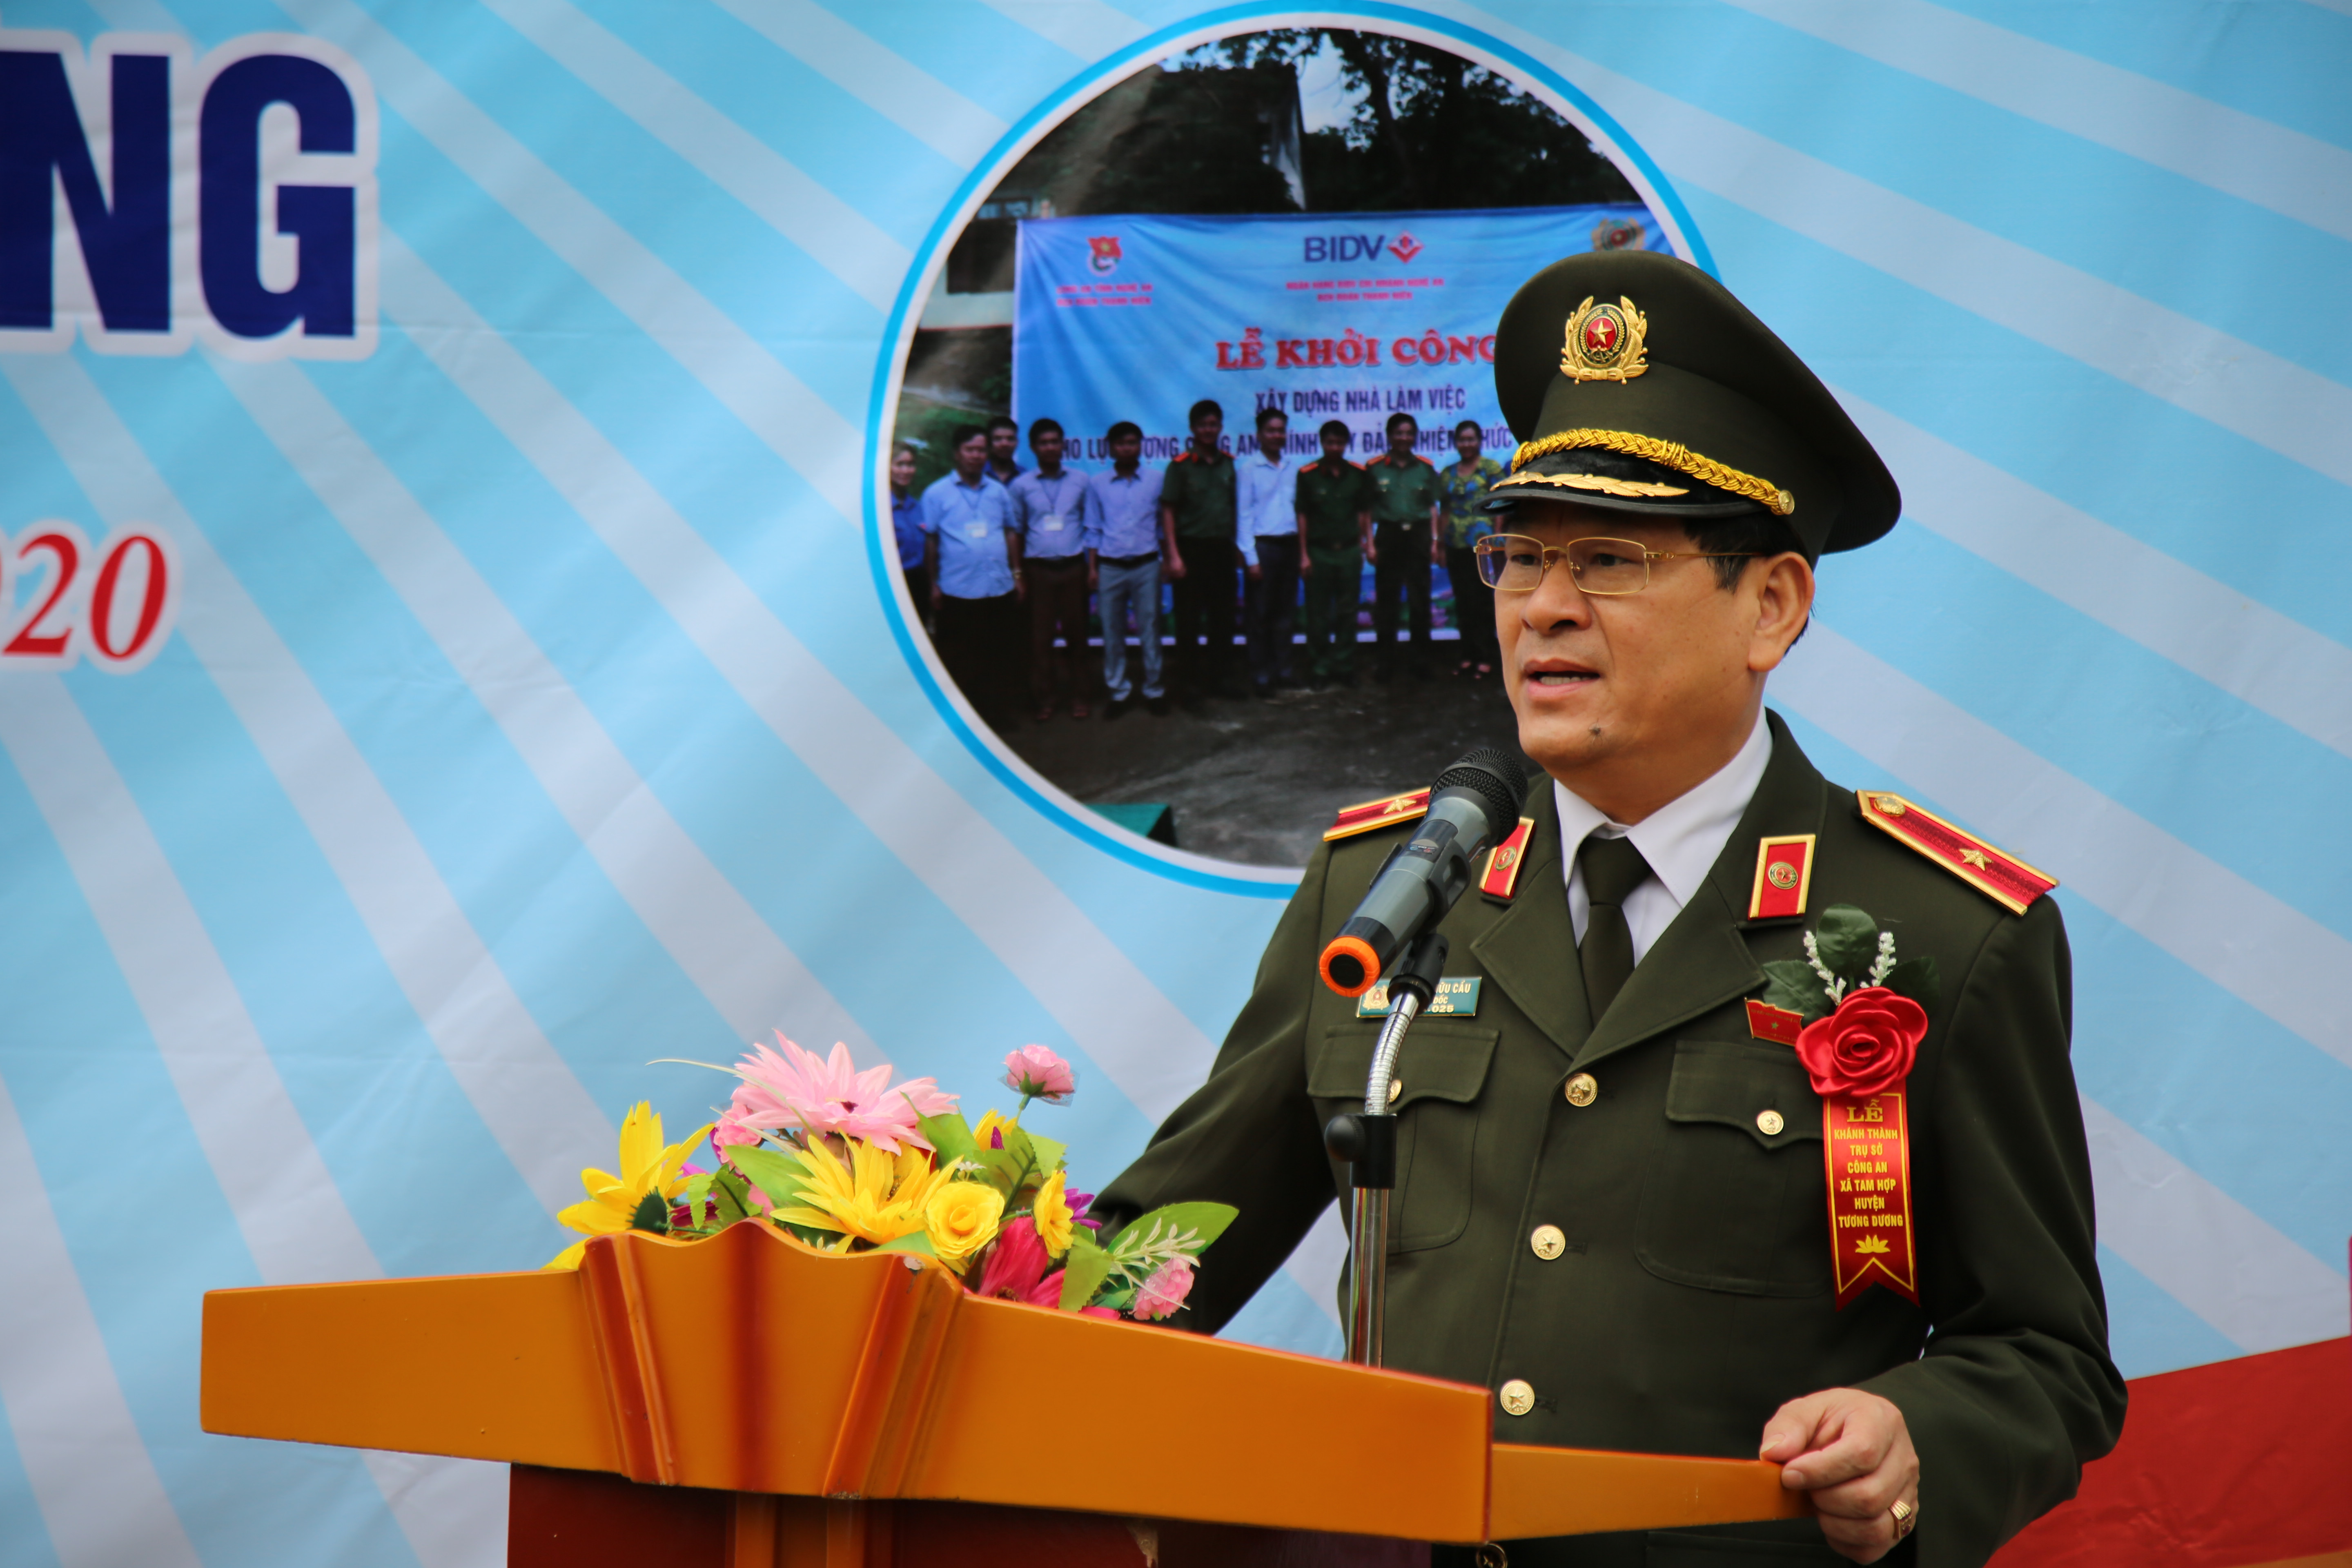 Thiếu tướng Nguyễn Hữu Cầu, Giám đốc Công an tỉnh phát biểu tại buổi lễ